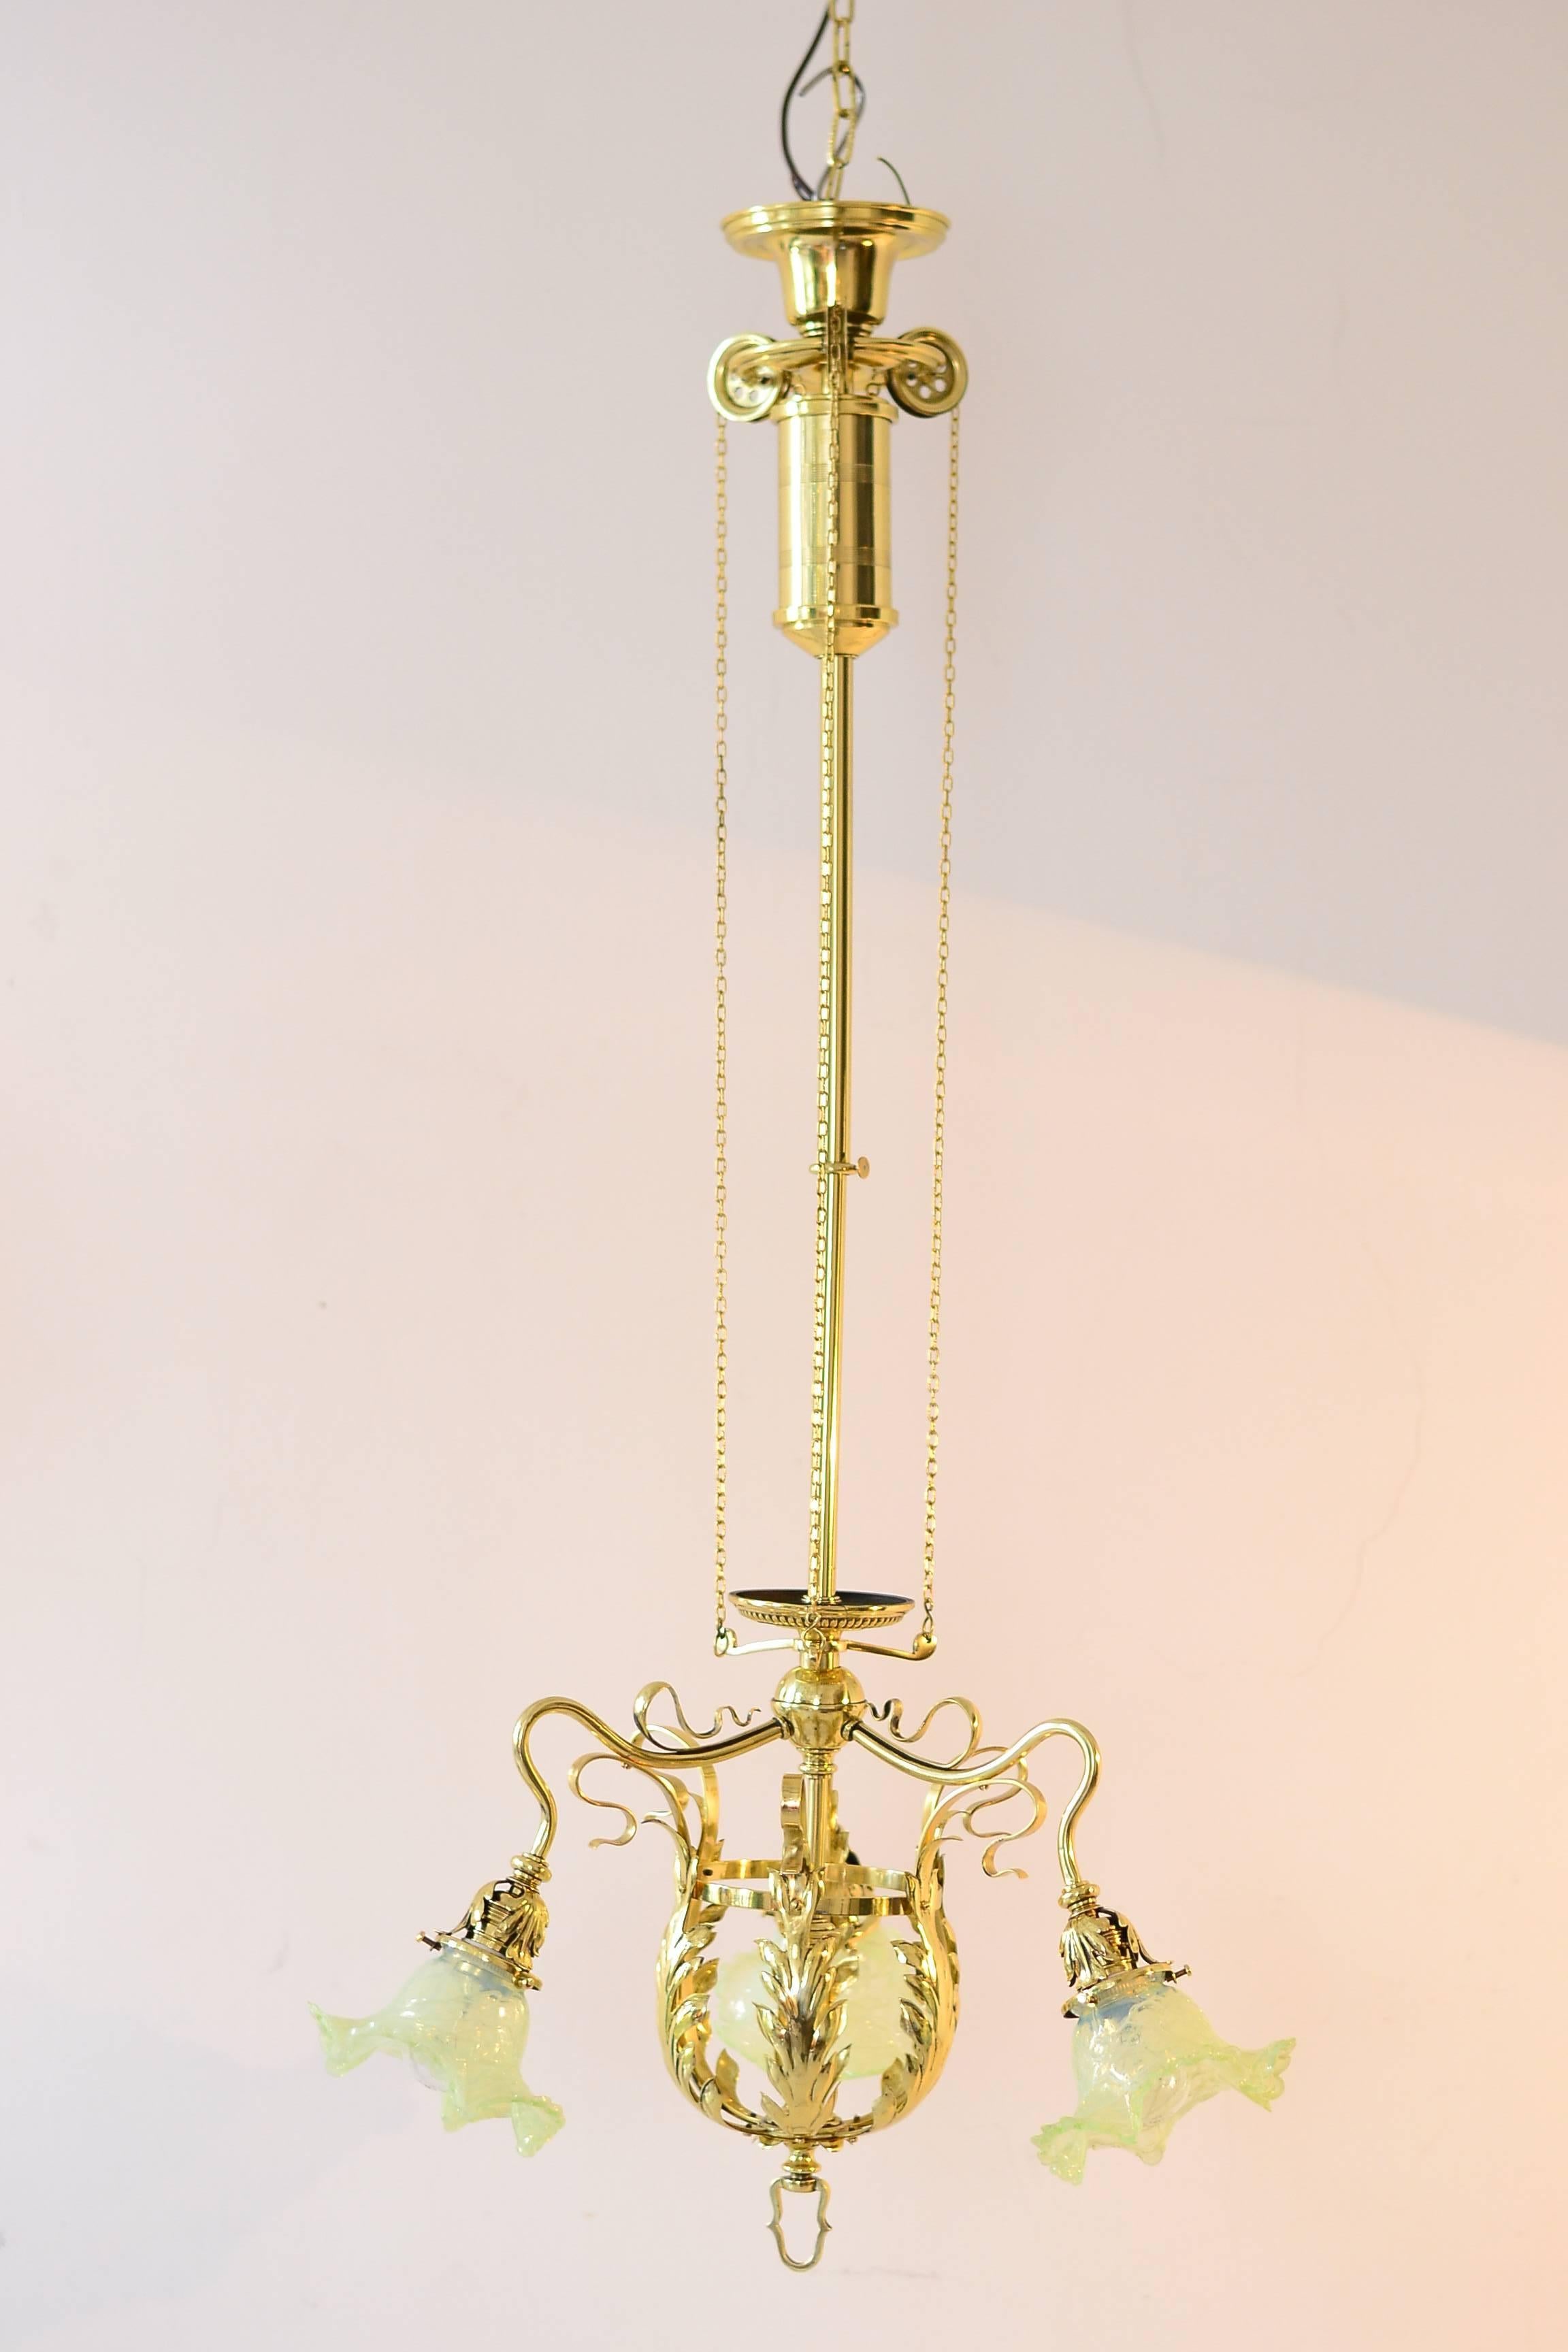 Verstellbarer Jugendstil-Blumen-Kronleuchter mit Palme König-Glasschirmen
poliert und einbrennlackiert.
Eingezogene Höhe: 94 cm.
Ausgezogen: 120cm.